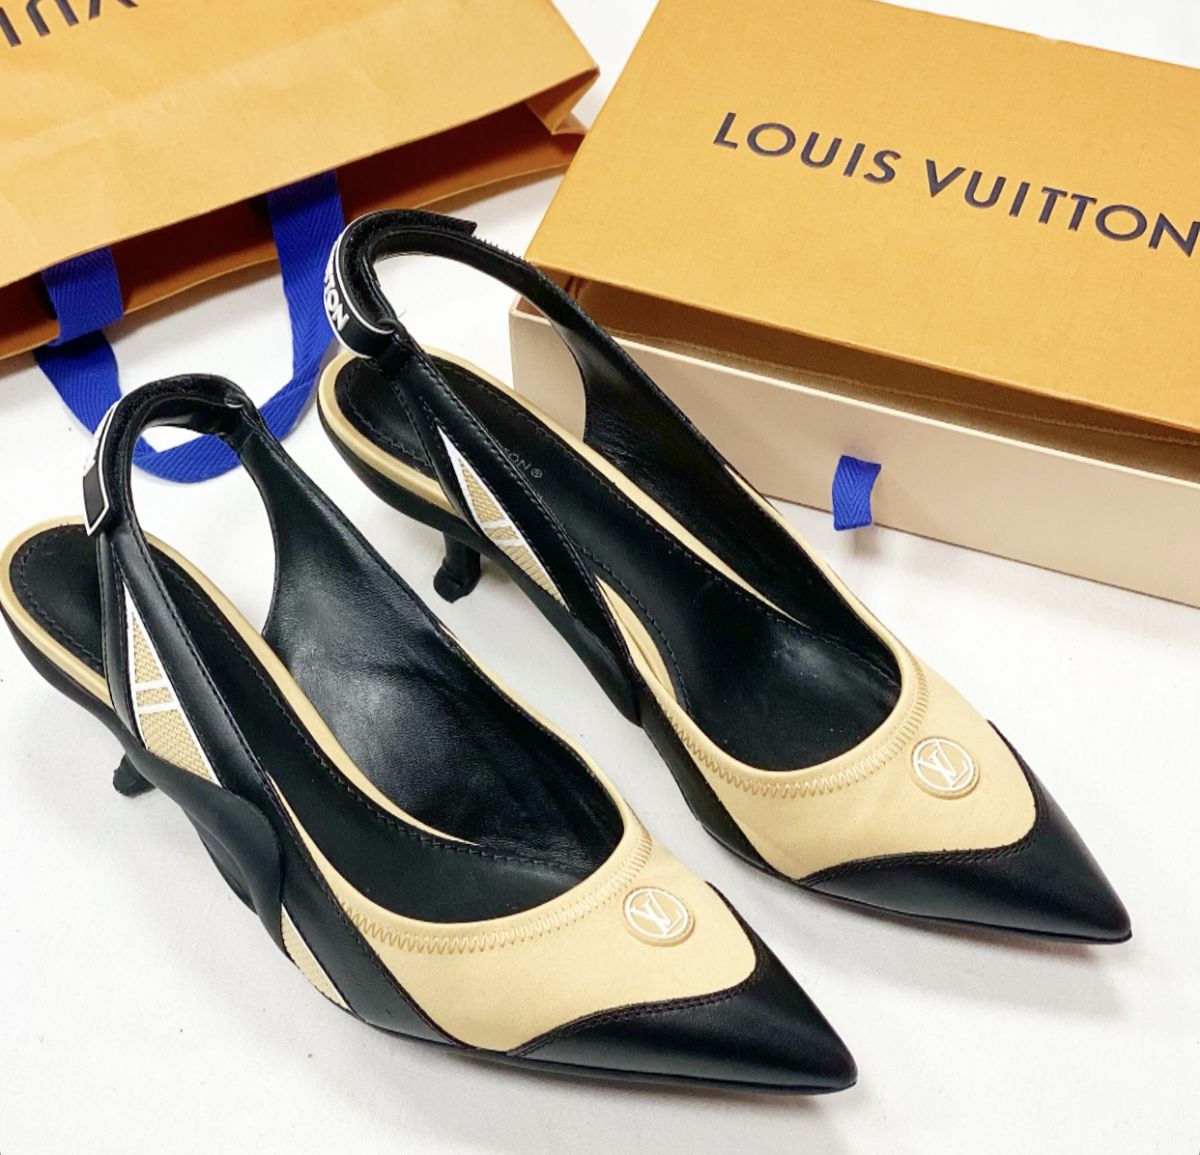 Босоножки Louis Vuitton размер 40 цена 30 770 руб 